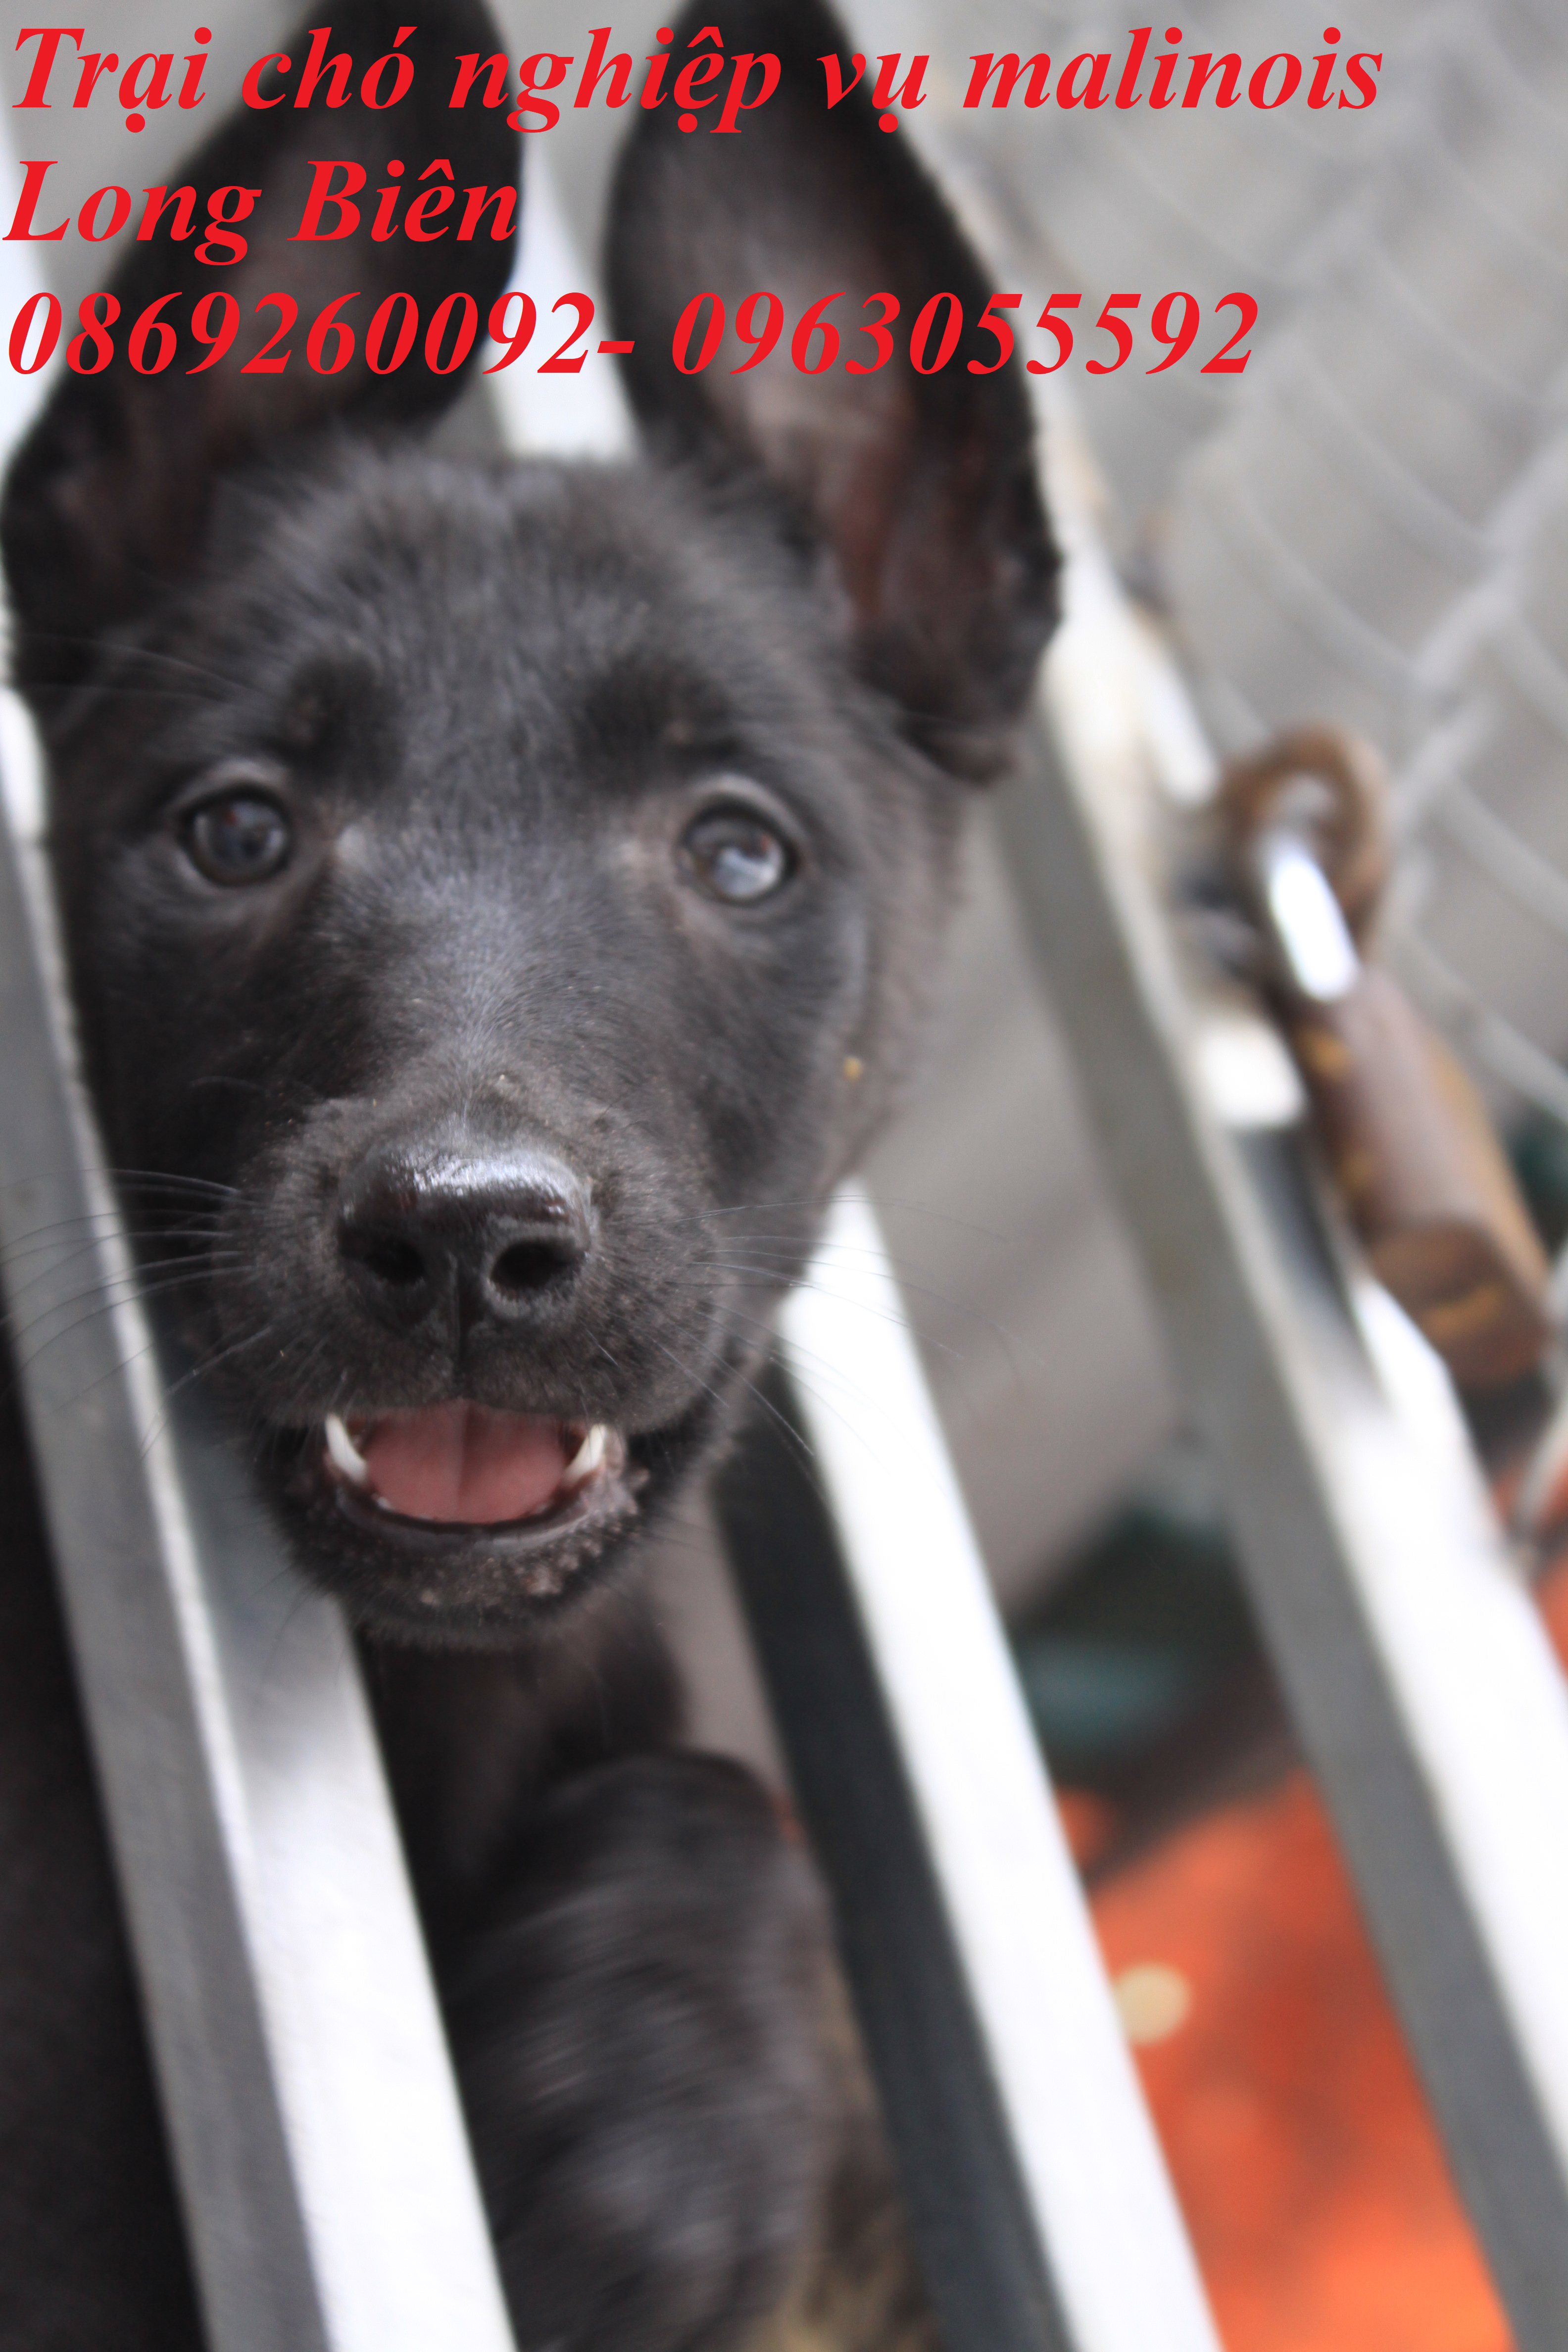 Bán chó becgie Bỉ con nặng 6-8kg tại trại chó nghiệp vụ malinois Long Biên